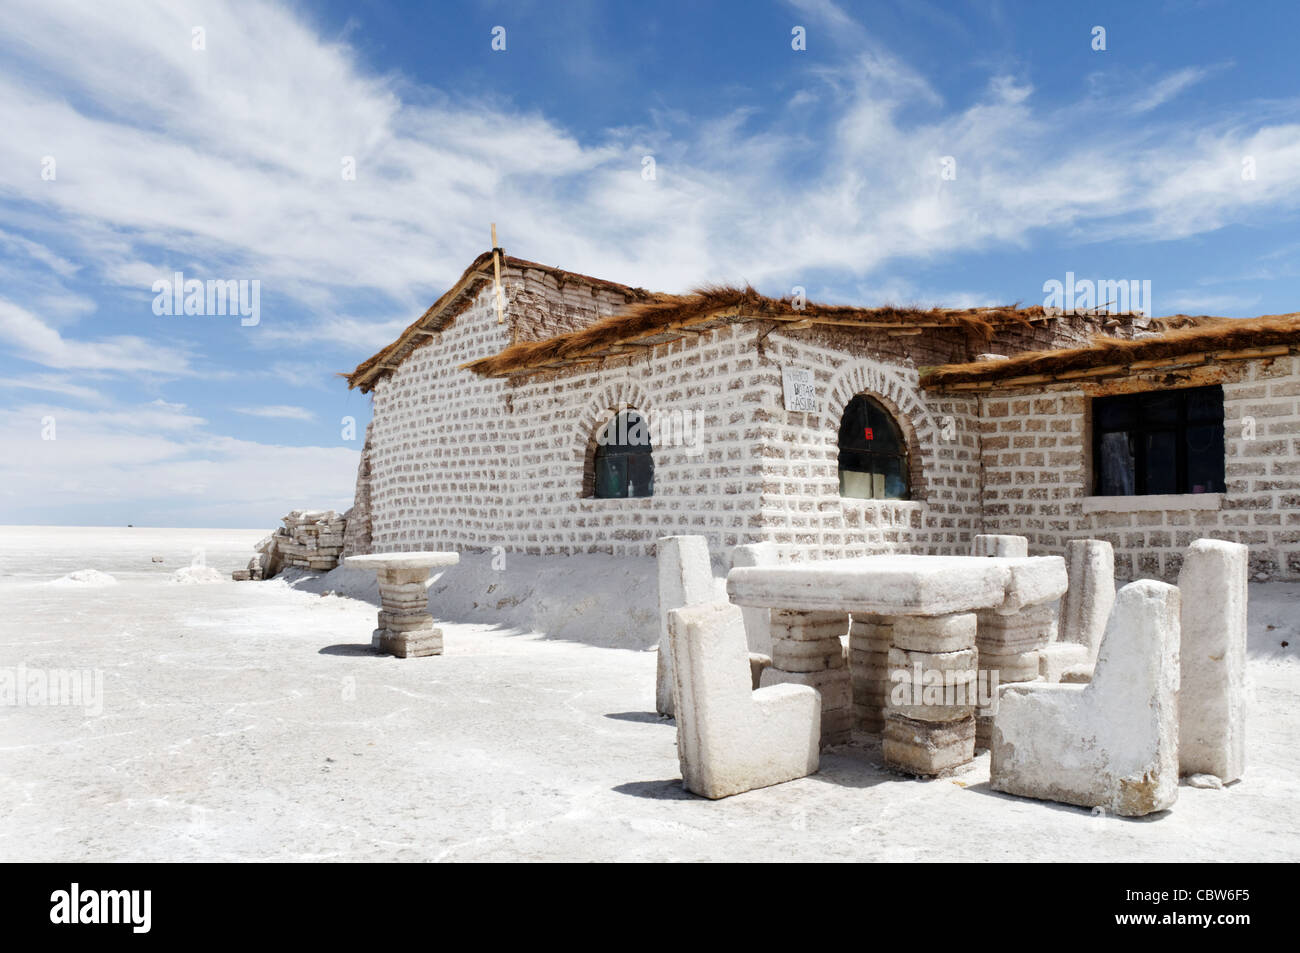 El exterior del hotel de sal, con sillas y mesas de la sal, en el Salar de Uyuni, Bolivia Foto de stock